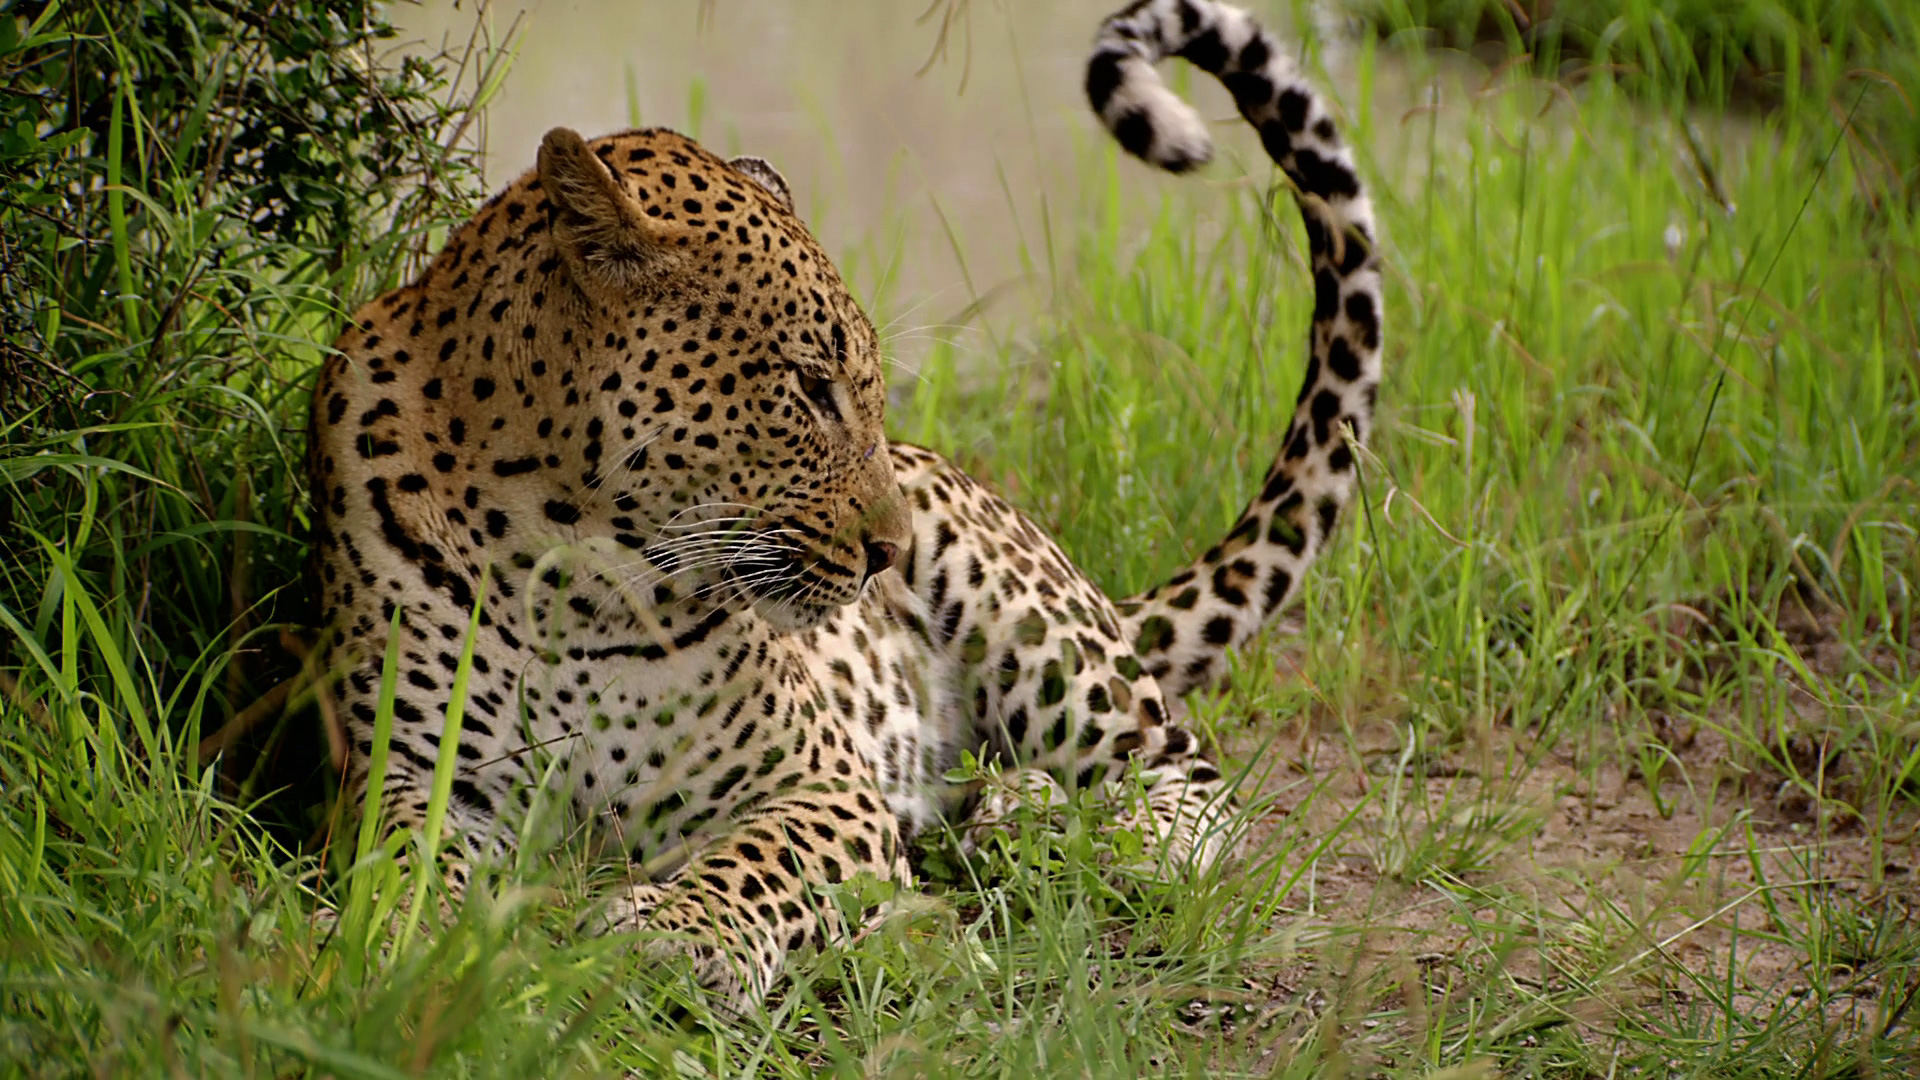 Female Leopard|